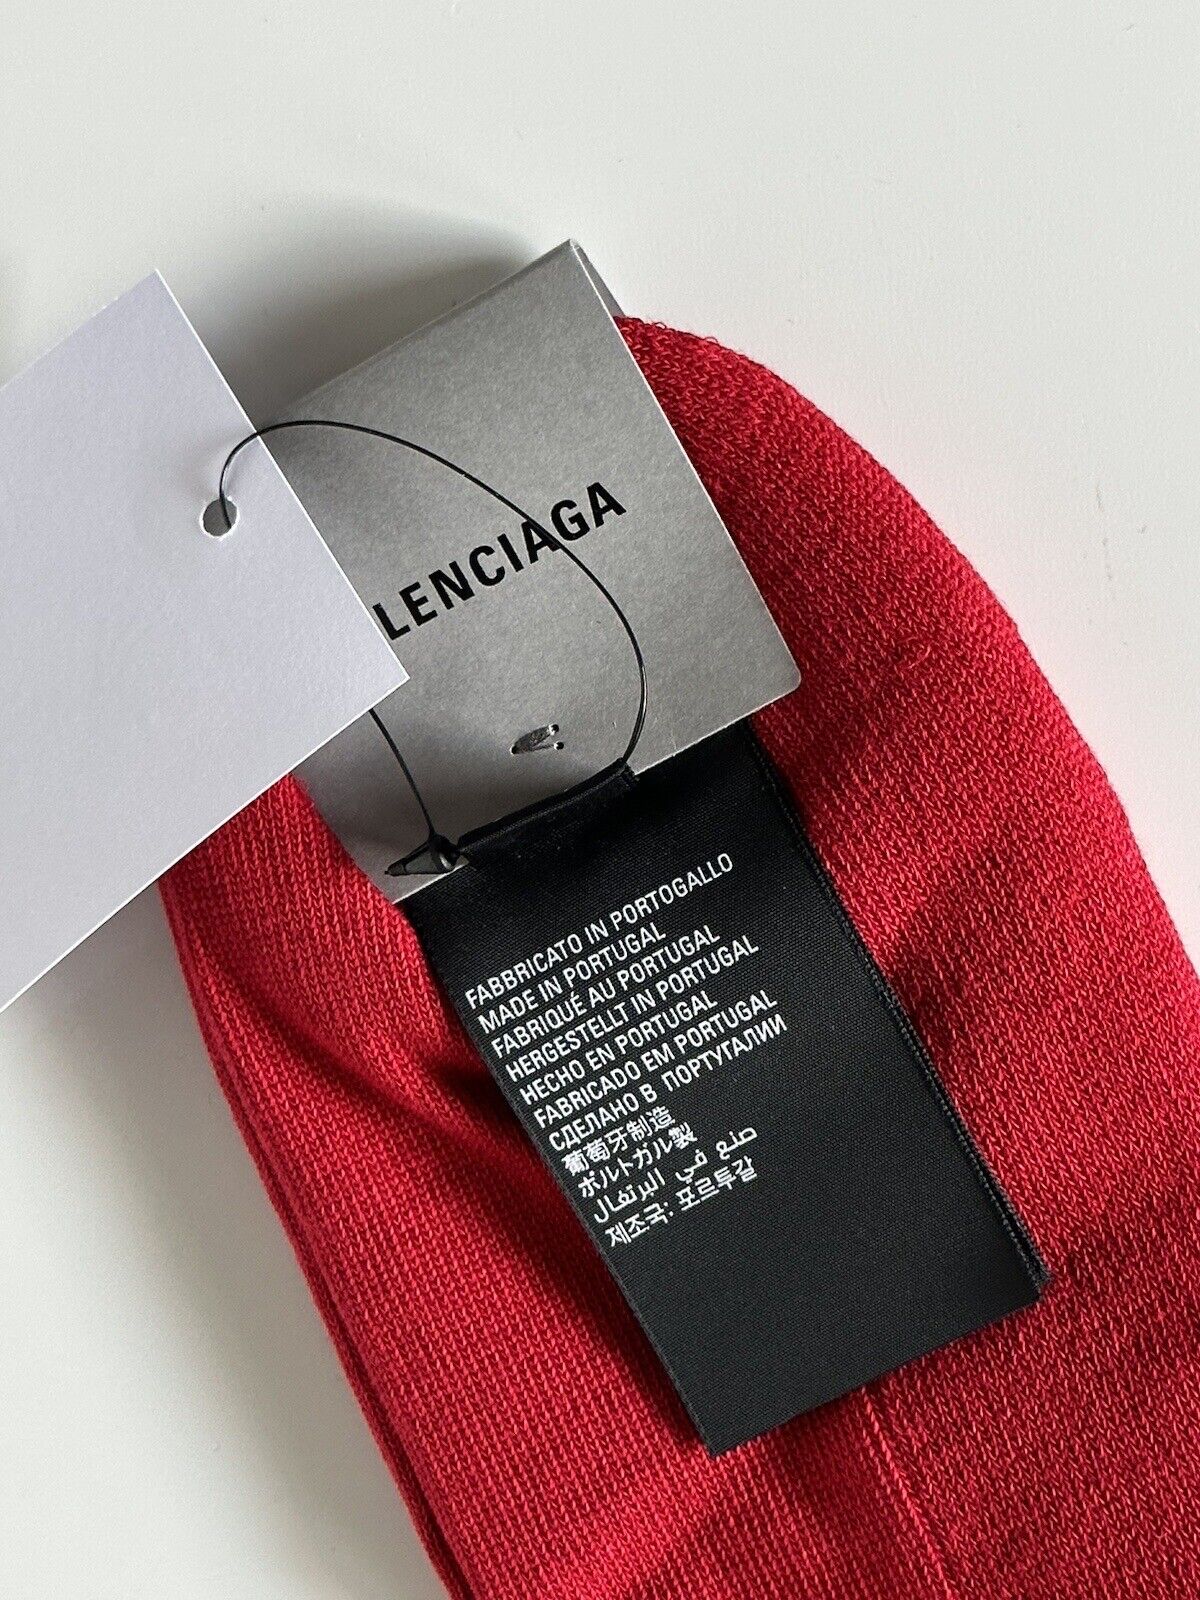 Теннисные носки Balenciaga Logo, красные, большие (12 долларов США), NWT, 150 долларов США, сделано в Португалии 